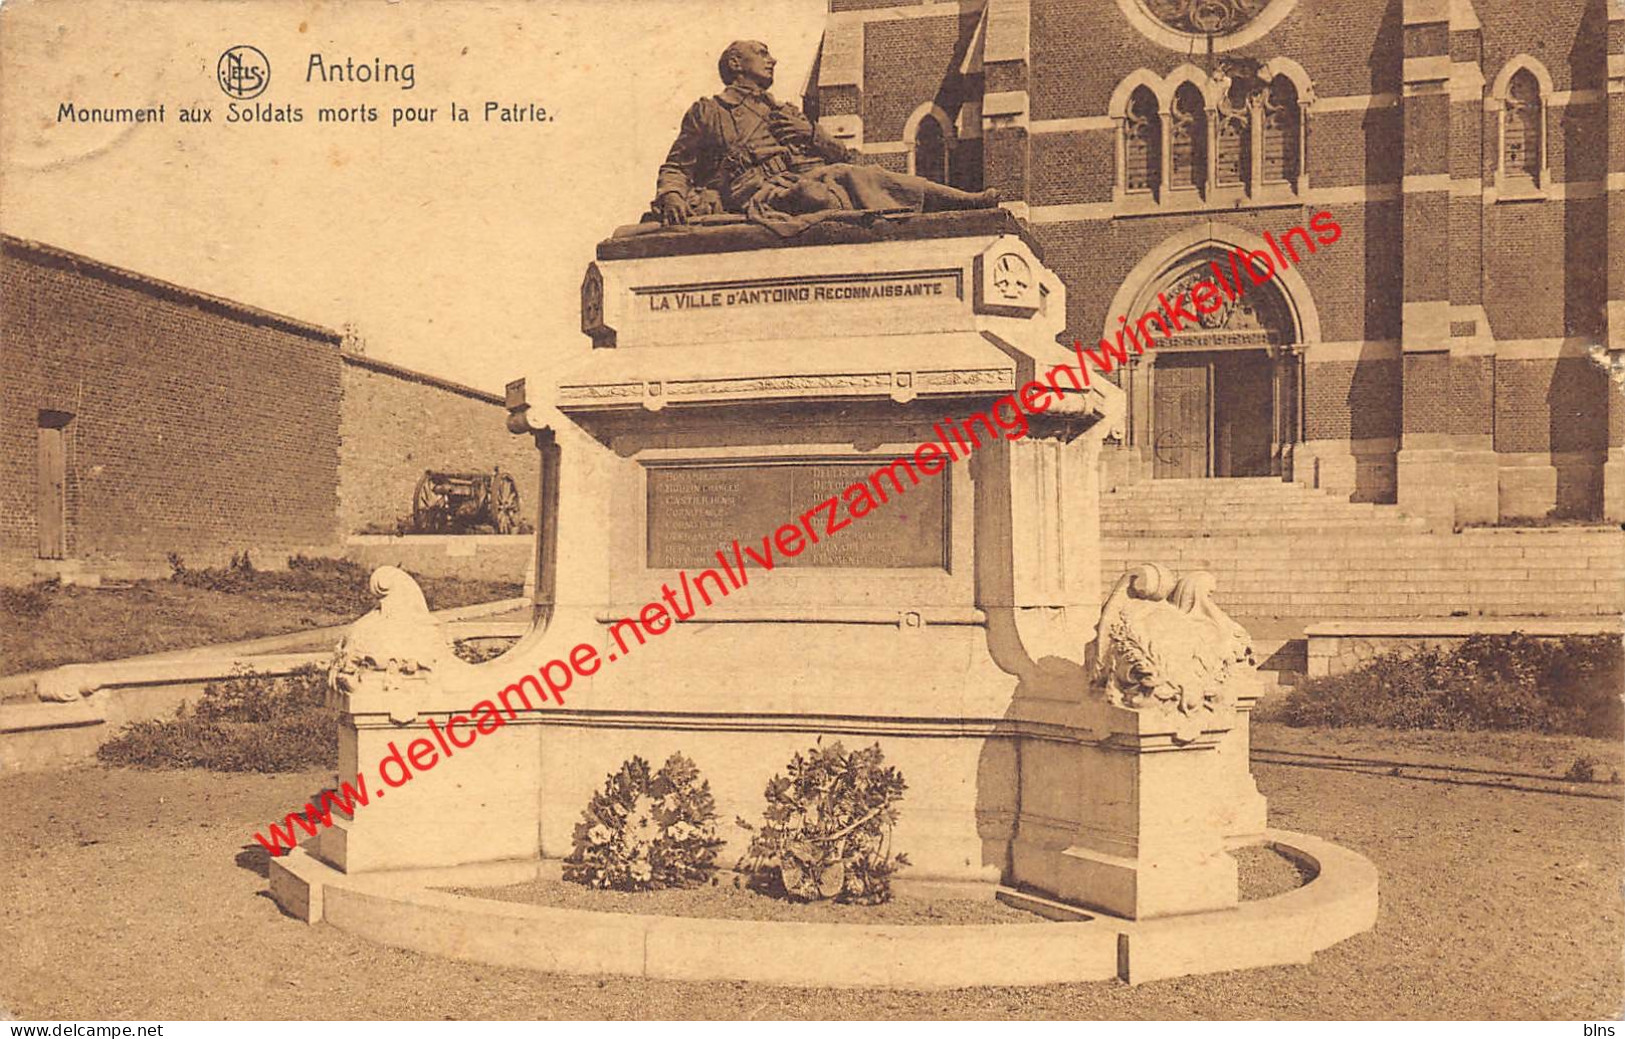 Monument Aux Soldats Morts Pour La Patrie - Antoing - Antoing